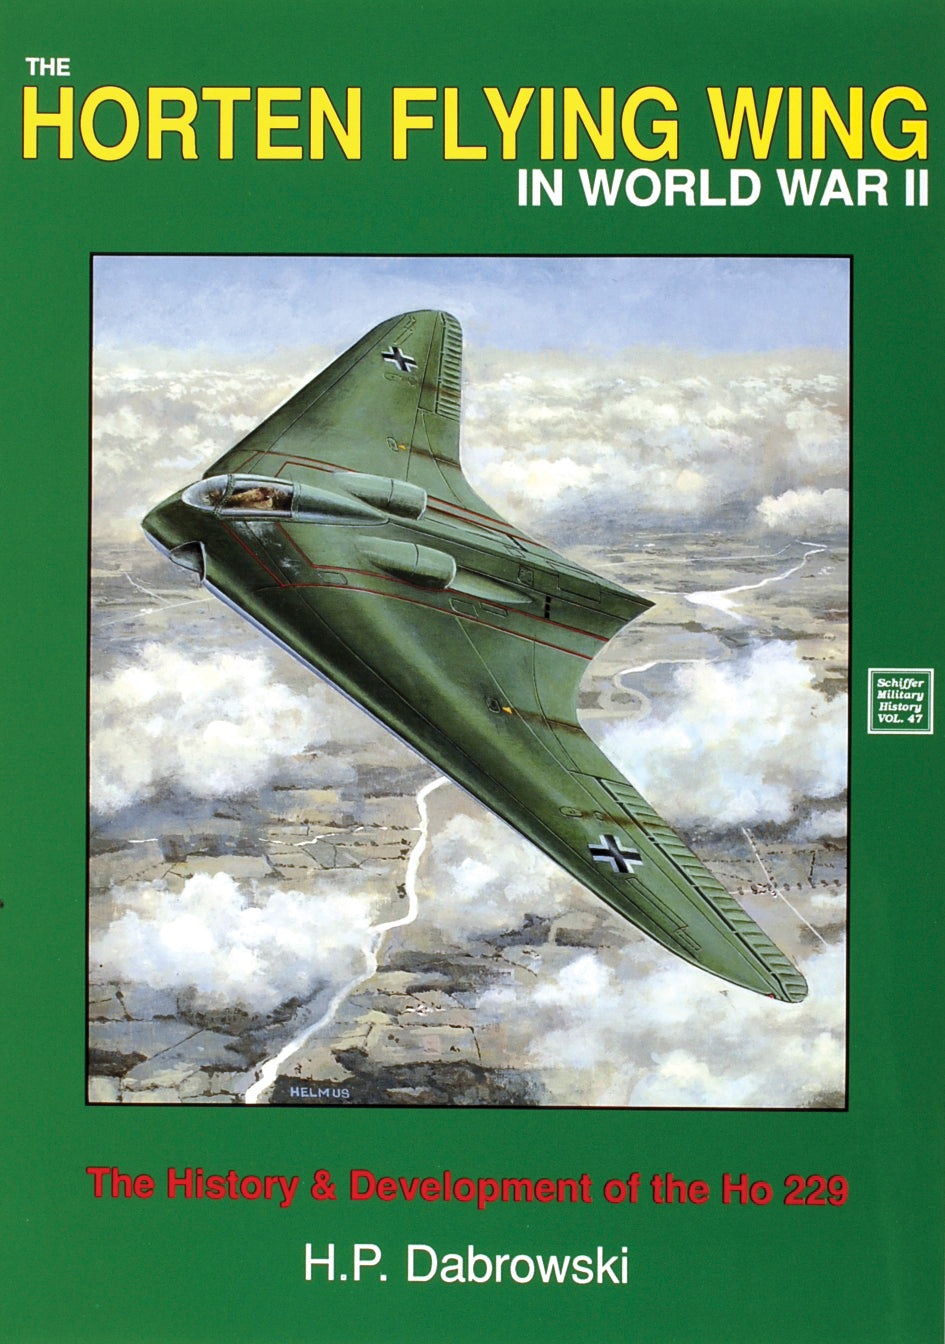 The Horten Flying Wing in World War II